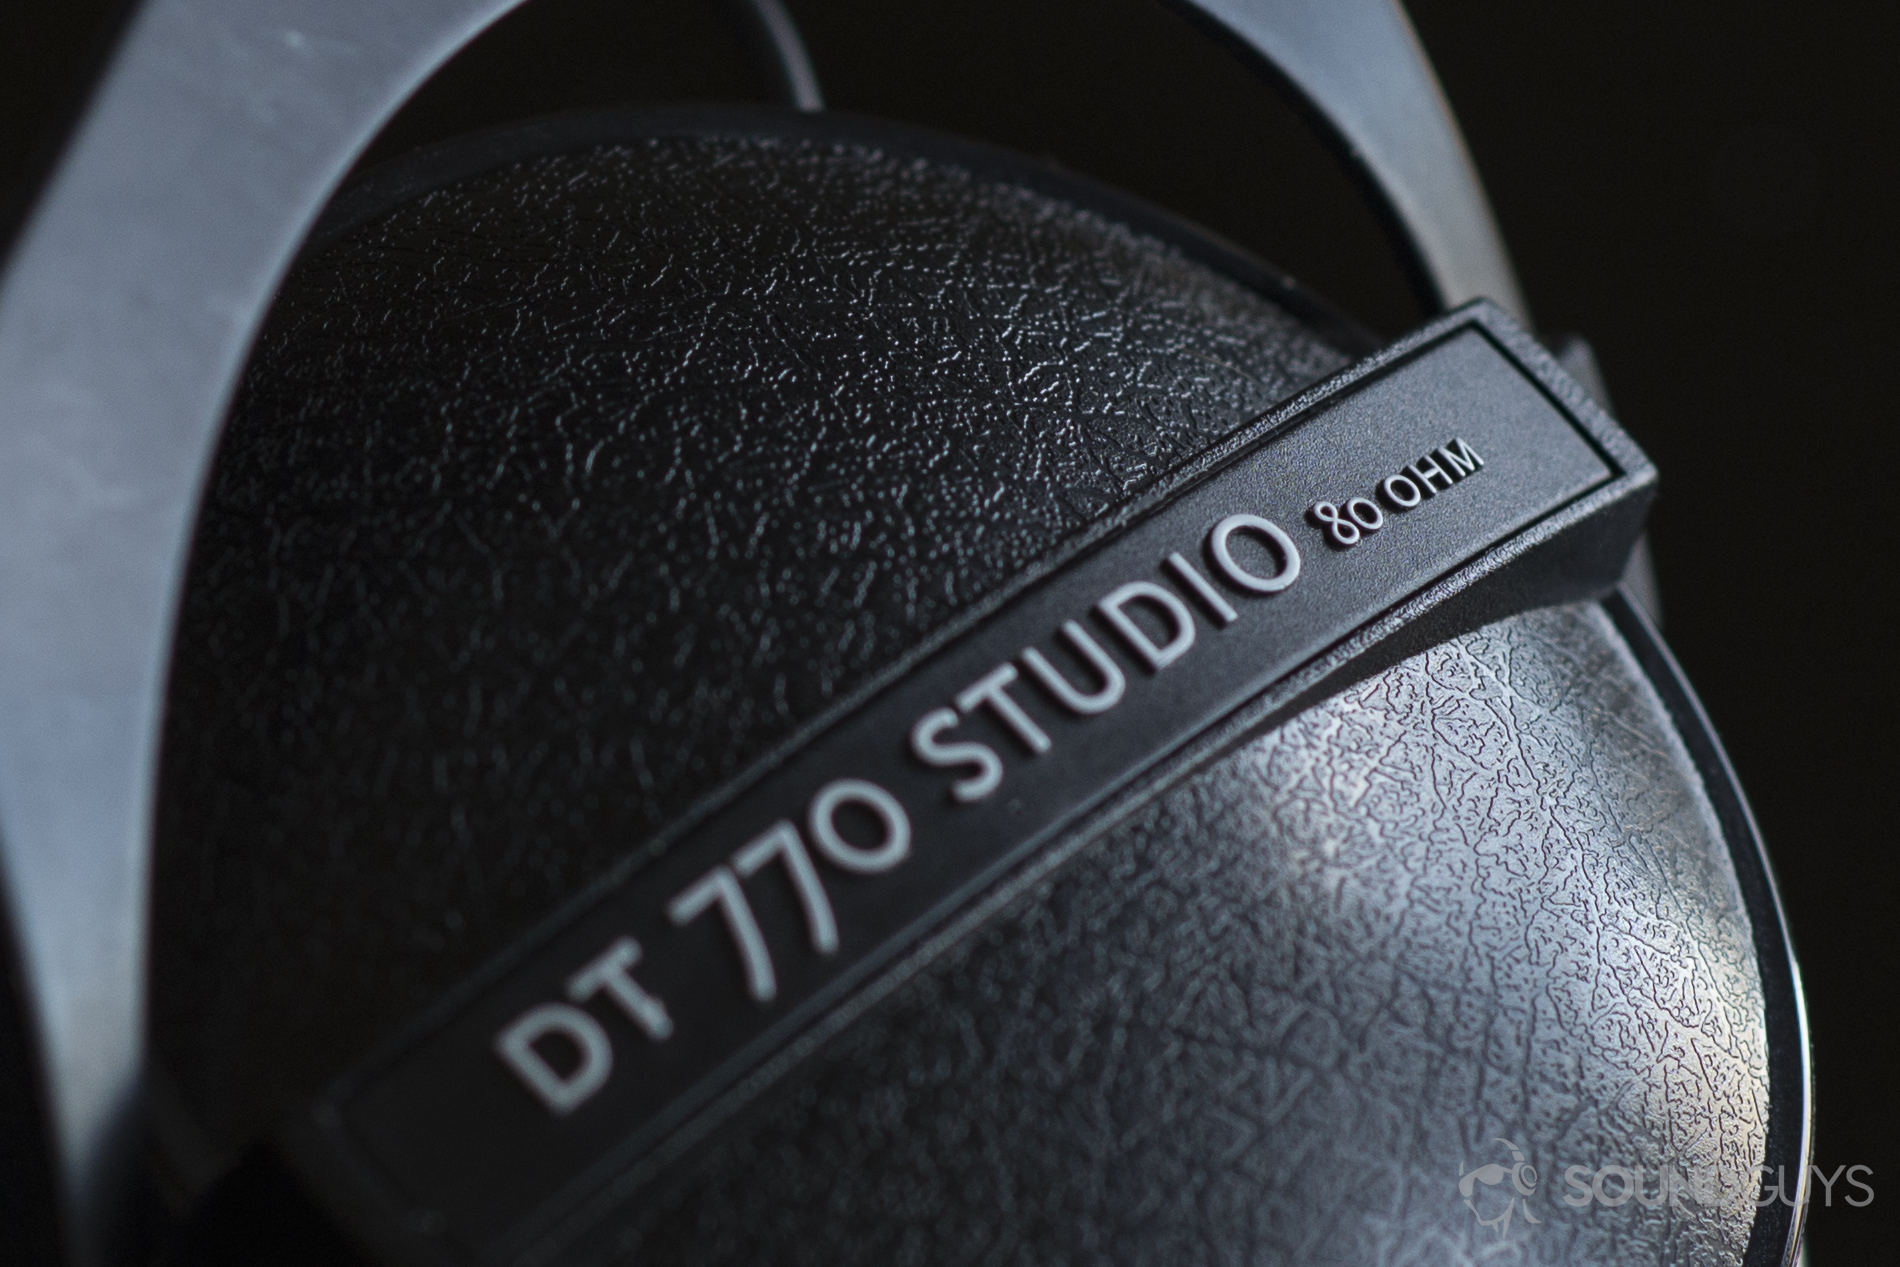 Ear cup of Beyerdynamic DT 770 Studio 80 Ohm headphones.